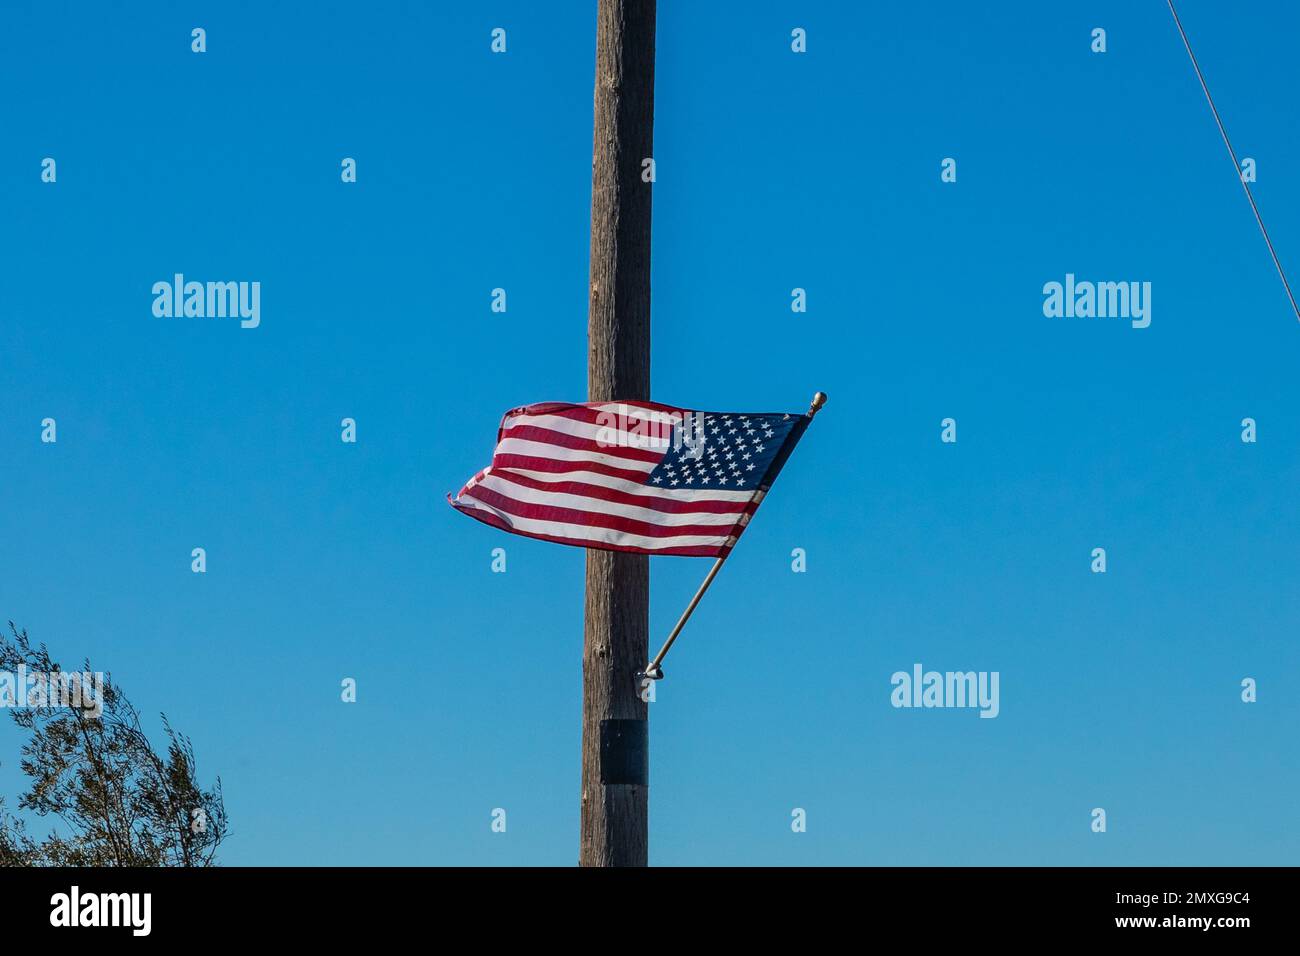 Un drapeau américain flottant dans le vent sur un poteau utilitaire dans le comté de Stanislaus Californie Etats-Unis Banque D'Images